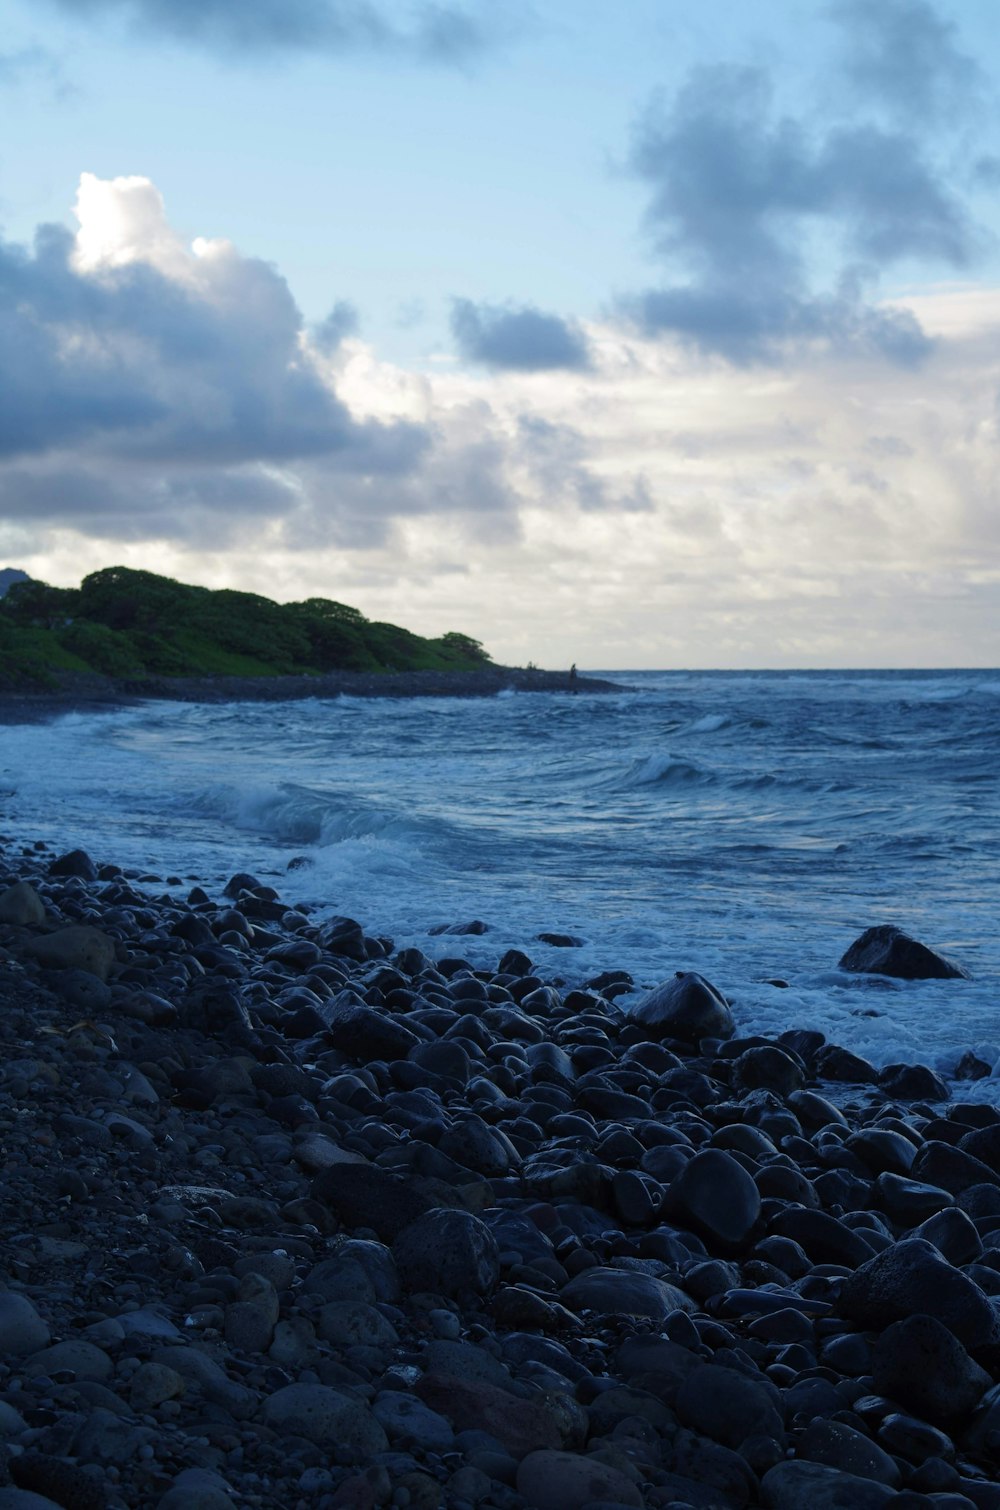 Une plage rocheuse au bord de l’océan sous un ciel nuageux